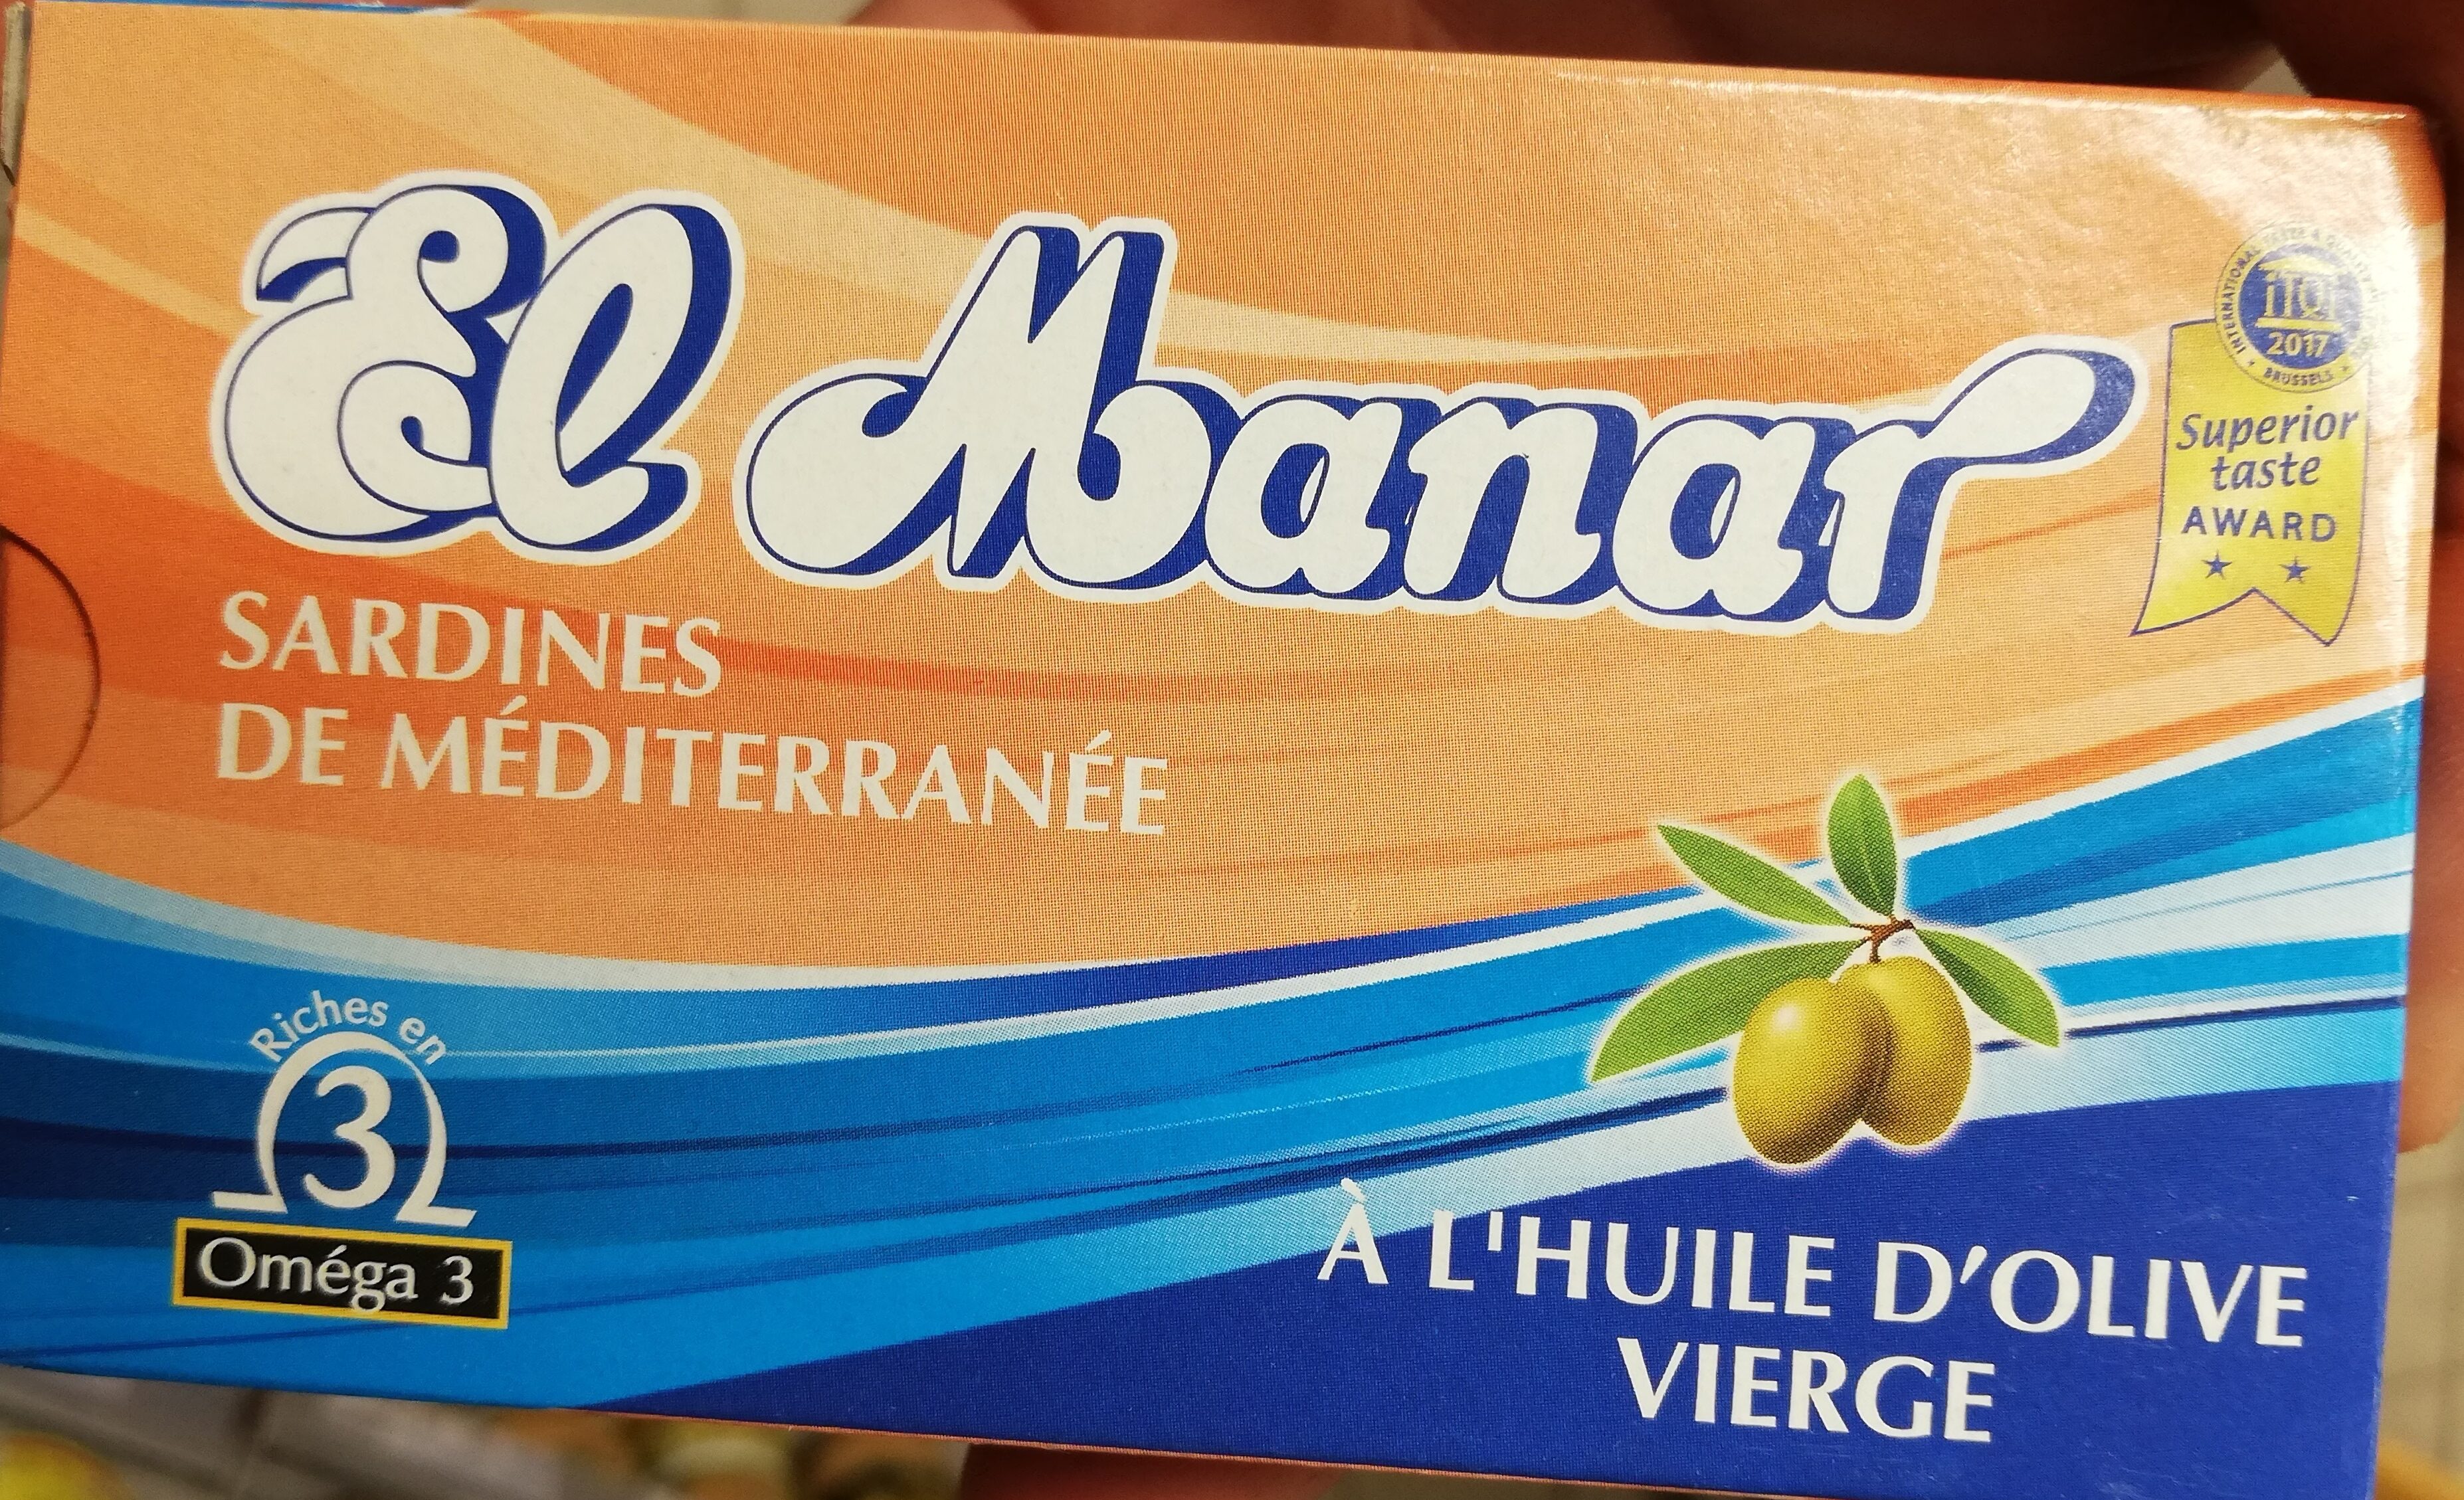 Sardines de méditerranée à l’huile d’olive vierge - Product - fr